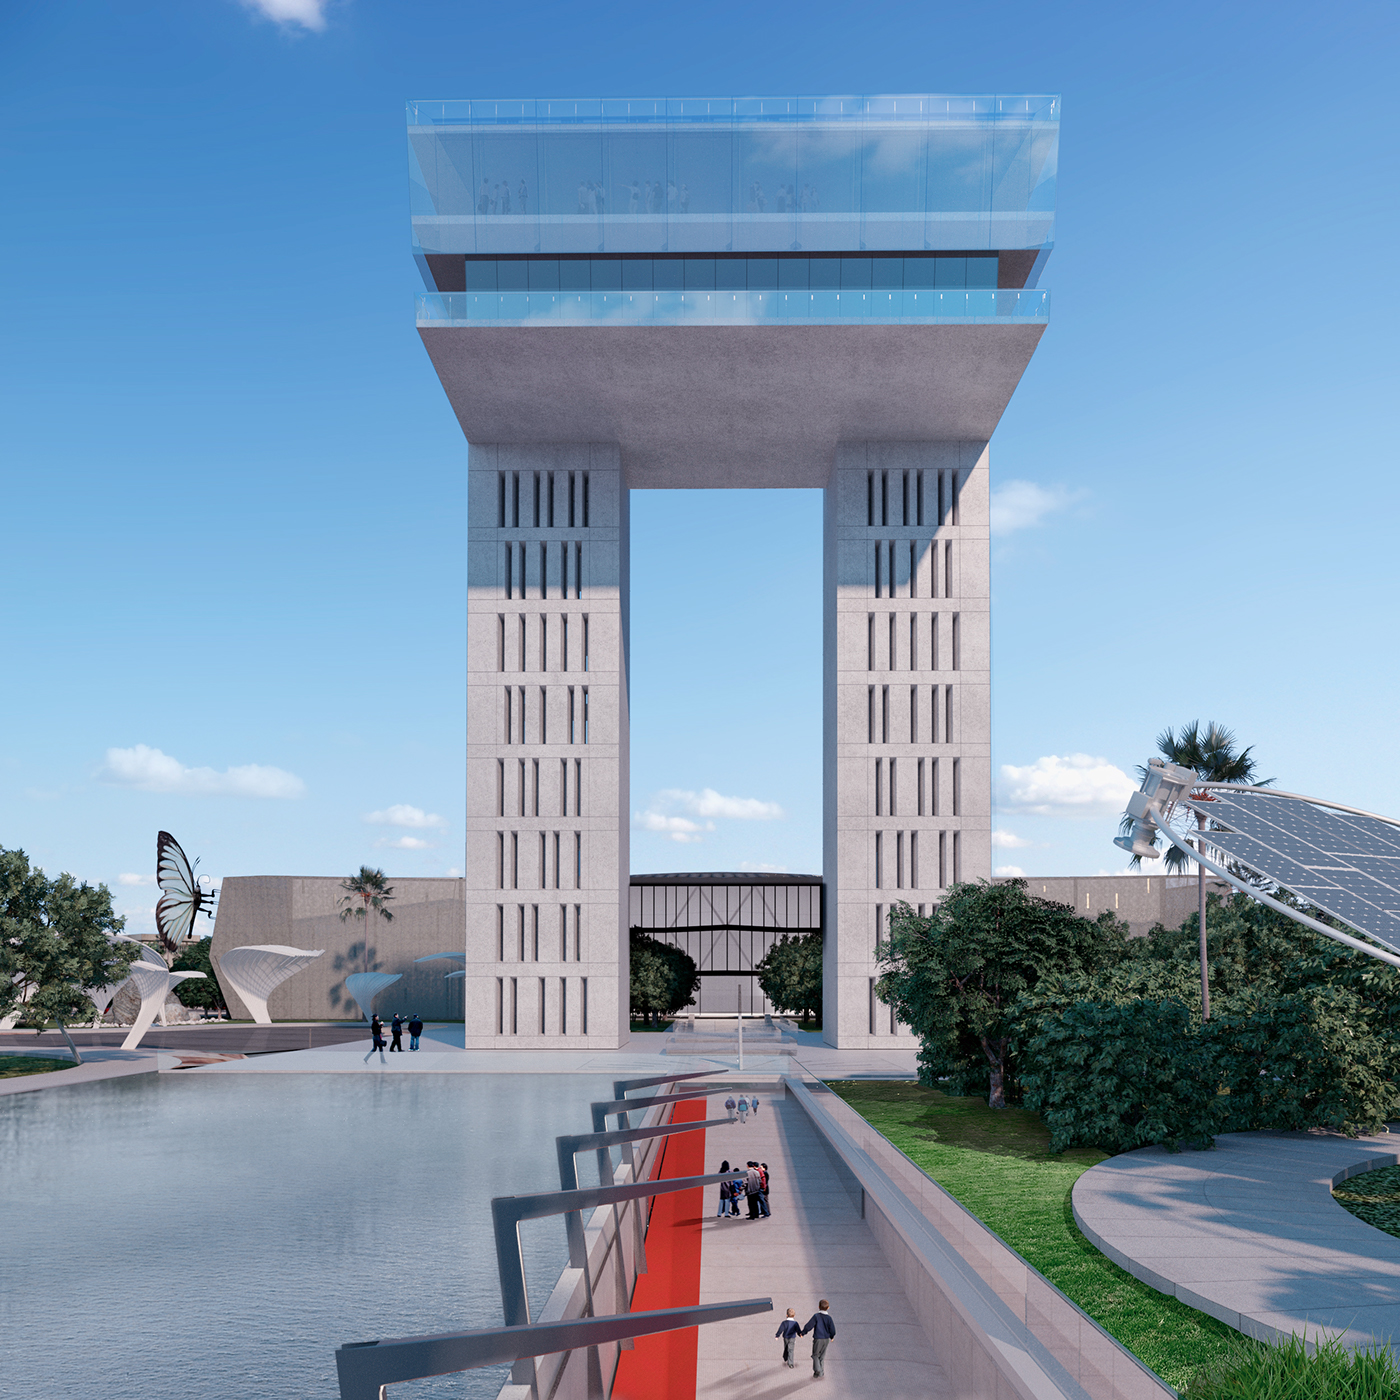 cairo scince city competitionn planning egypt planetrium musuem Park science